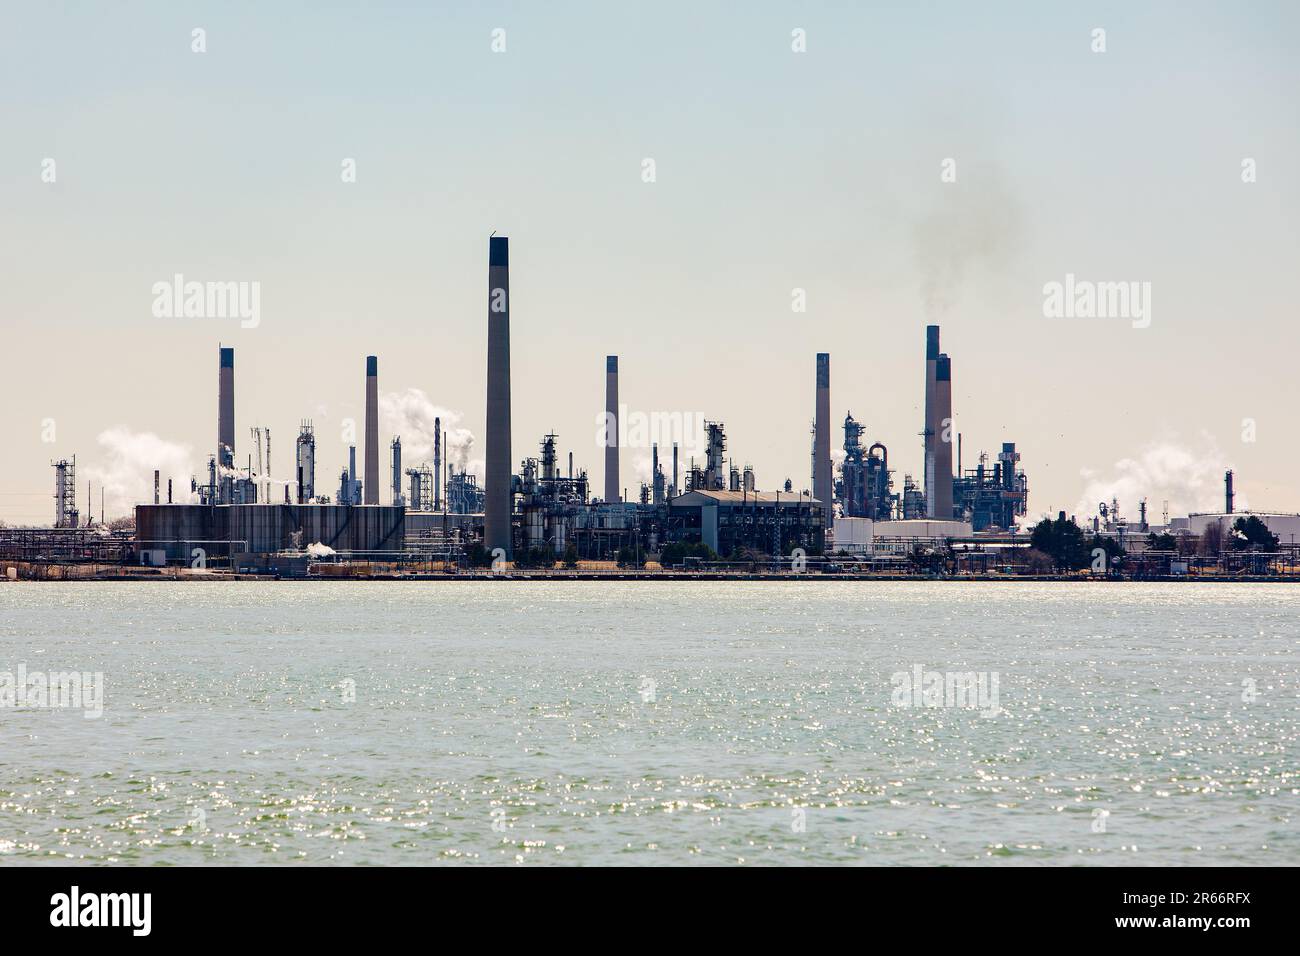 Affollato Lake raffinerie petrolifere impianti industriali pomeriggio diurno Foto Stock